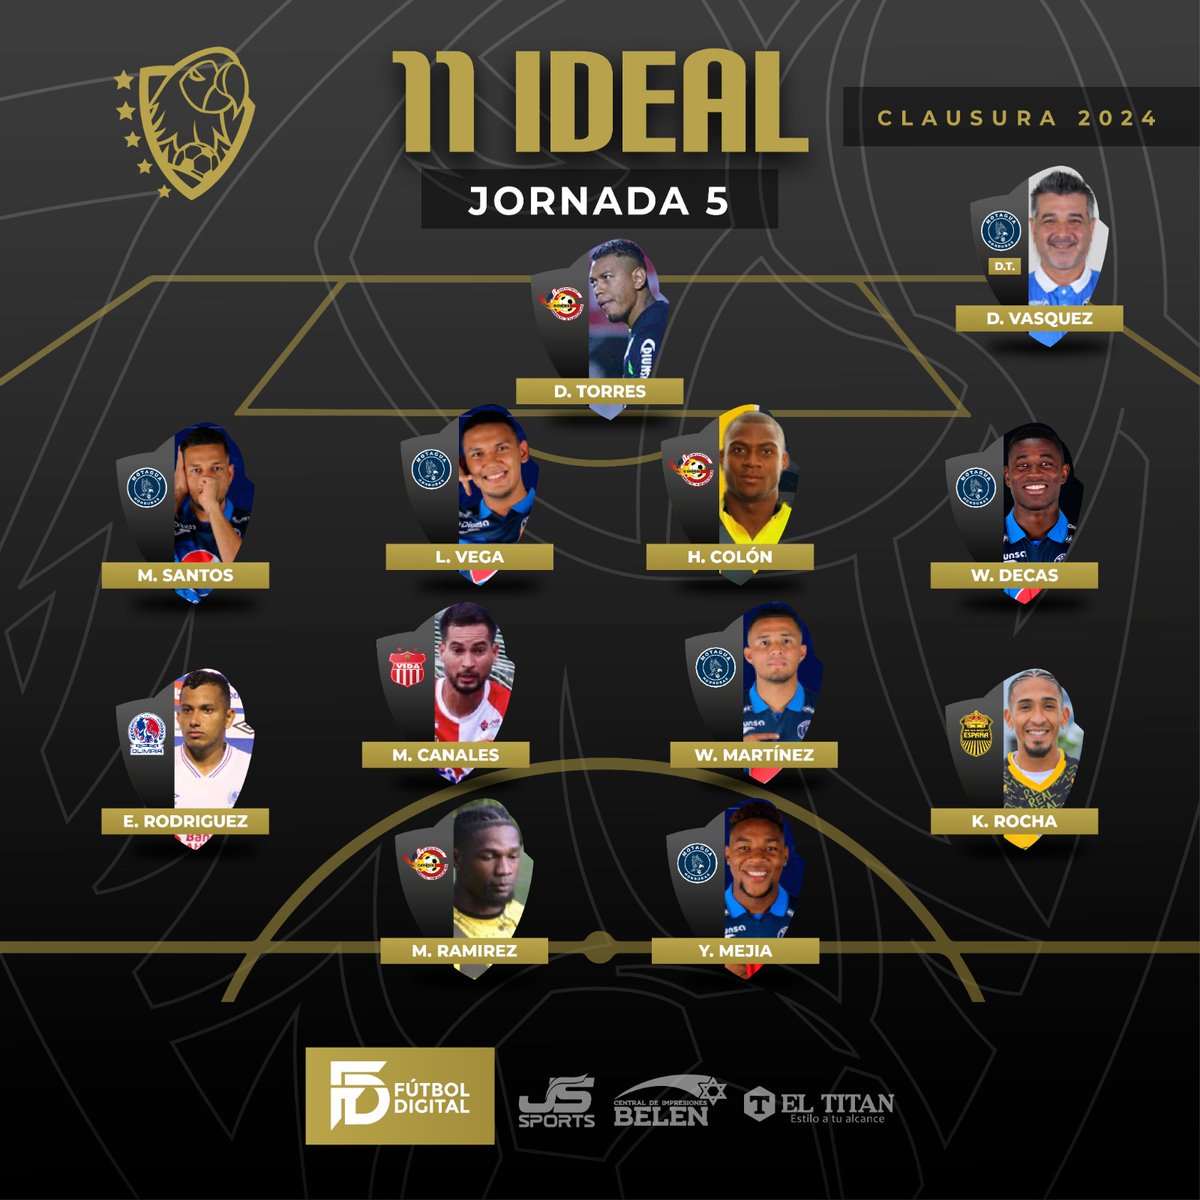 🔥¡EL  EQUIPO DE LA JORNADA 5! ⚽

🔝Once ideal de la jornada tres por parte del staff de Fútbol Digital.

Patrocinado por: @jerseystorehn1 @almaceneseltitan_hn

#FutbolDigital #LigaNacional #Jornada5 #onceideal